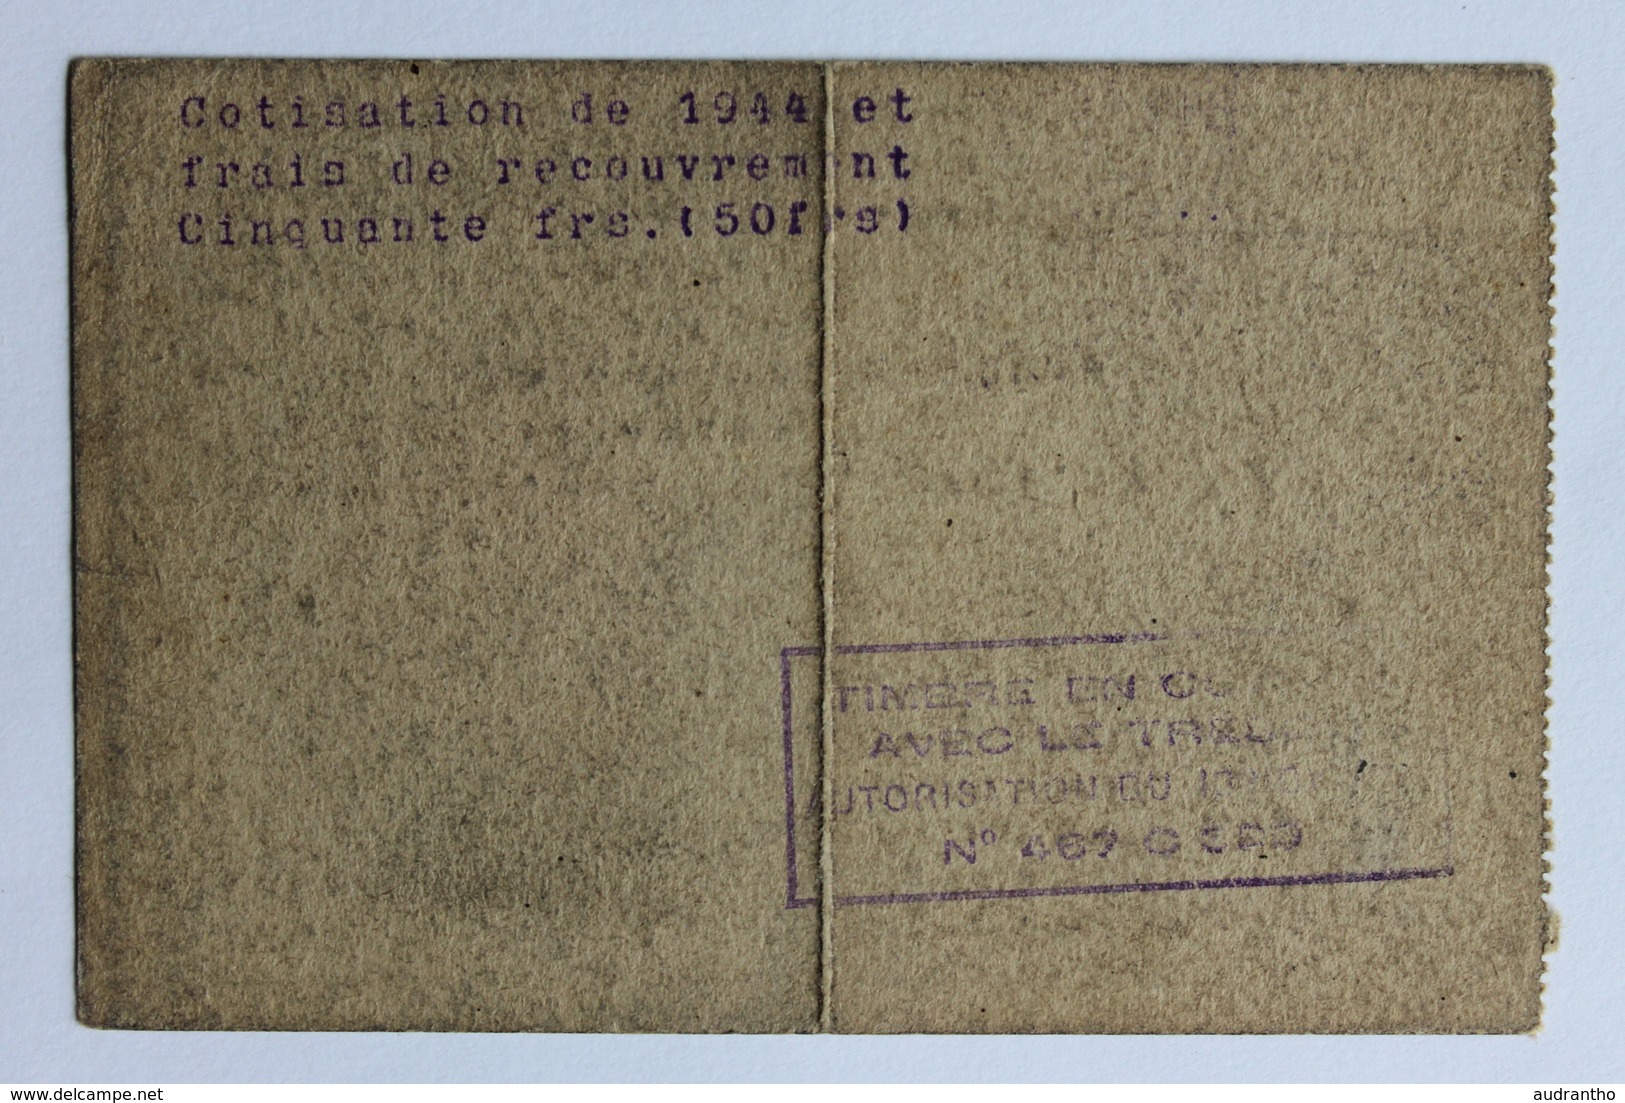 Carte Société Des Anciens élèves Ecoles Nationales D'Arts Et Métiers 1944 M. Hubert Périgueux Classe 38 - Diplômes & Bulletins Scolaires